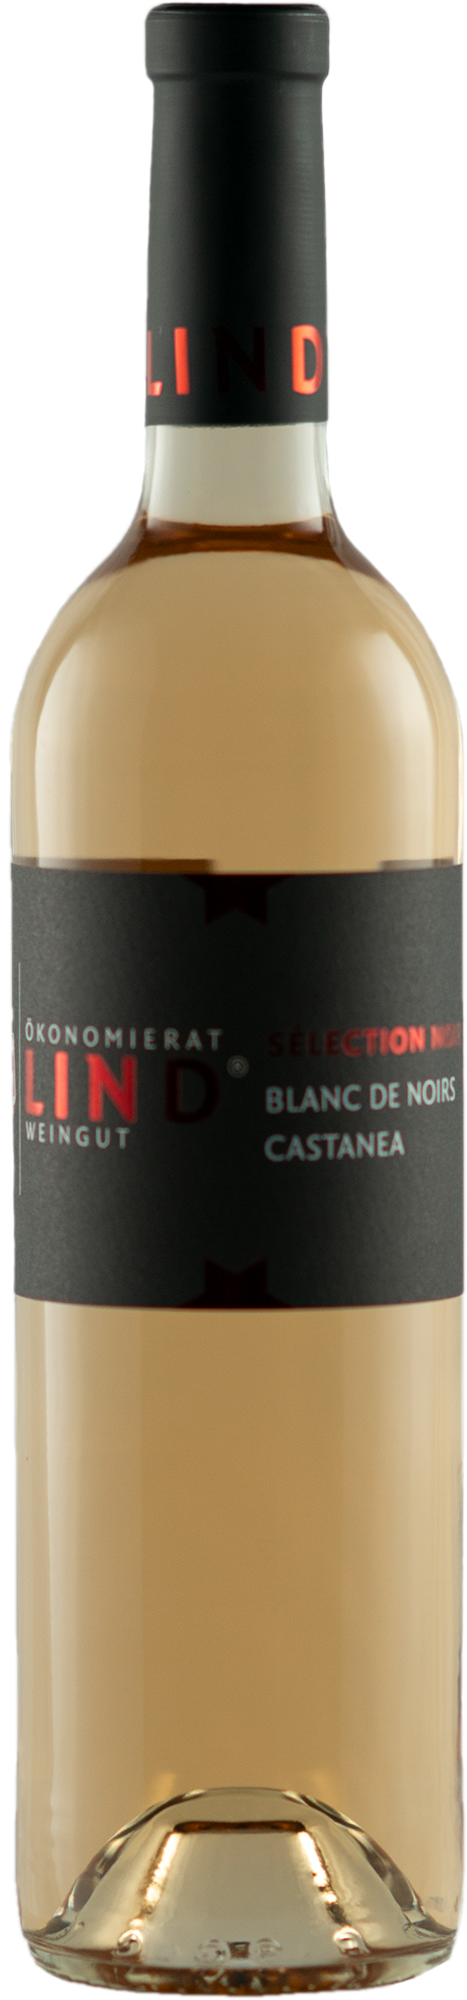 2021 Blanc de Noirs Castanea Selection Noir 0,75 L - Weingut Ökonomierat Lind